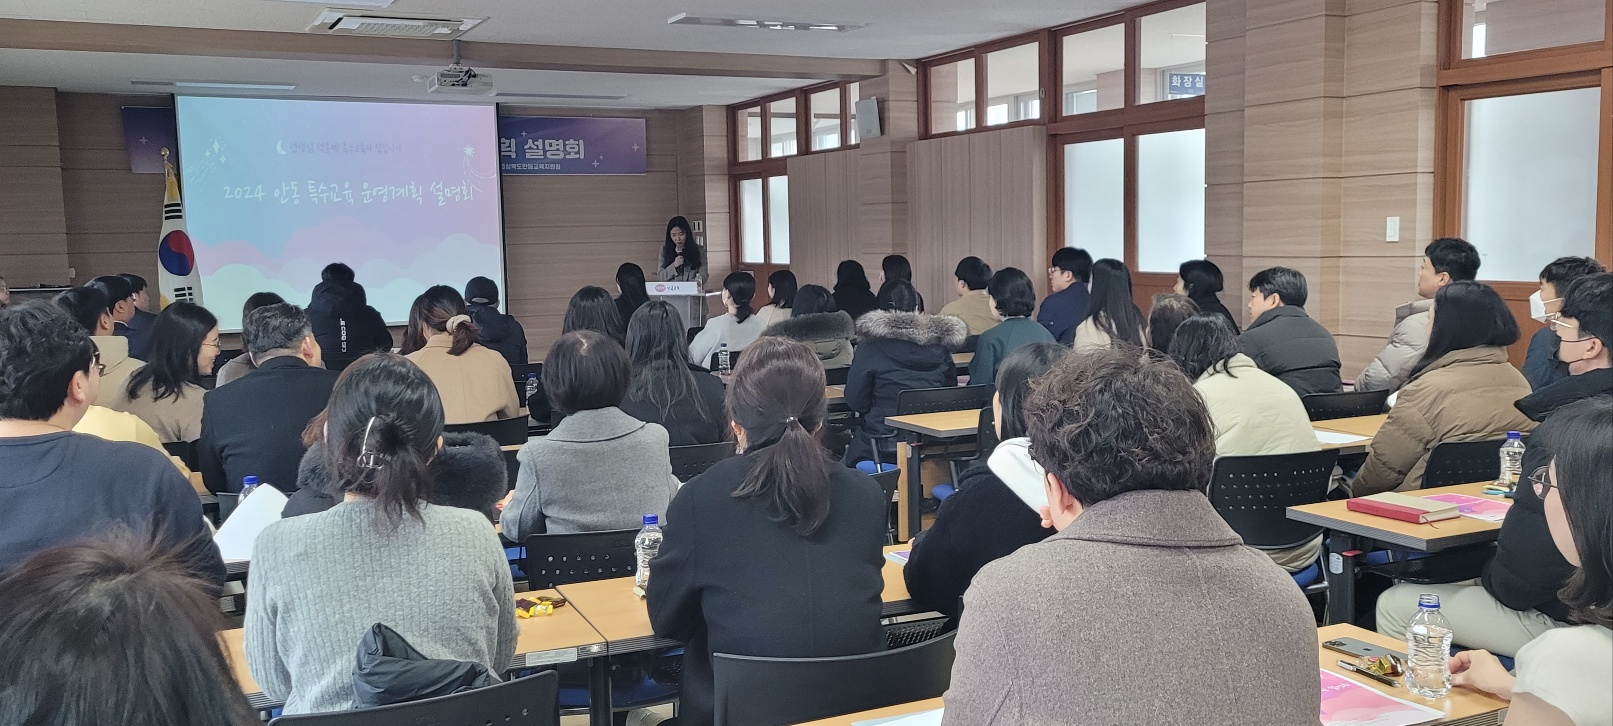 2024학년도 안동 특수교육 운영계획 설명회 개최 확대 보기